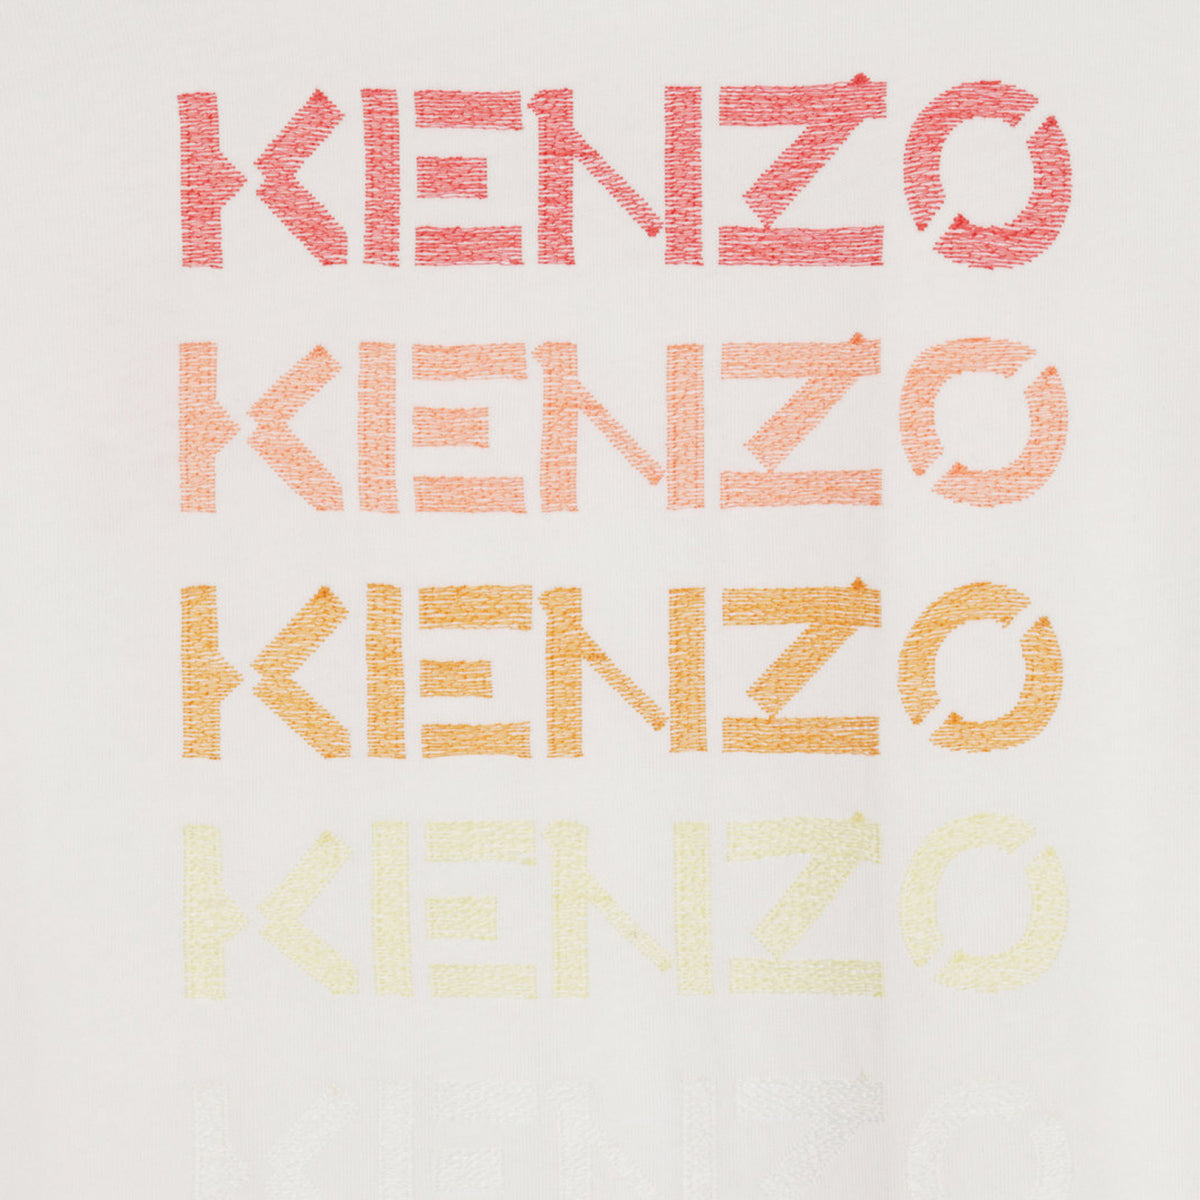 Kenzo Men's Logo T-Shirt